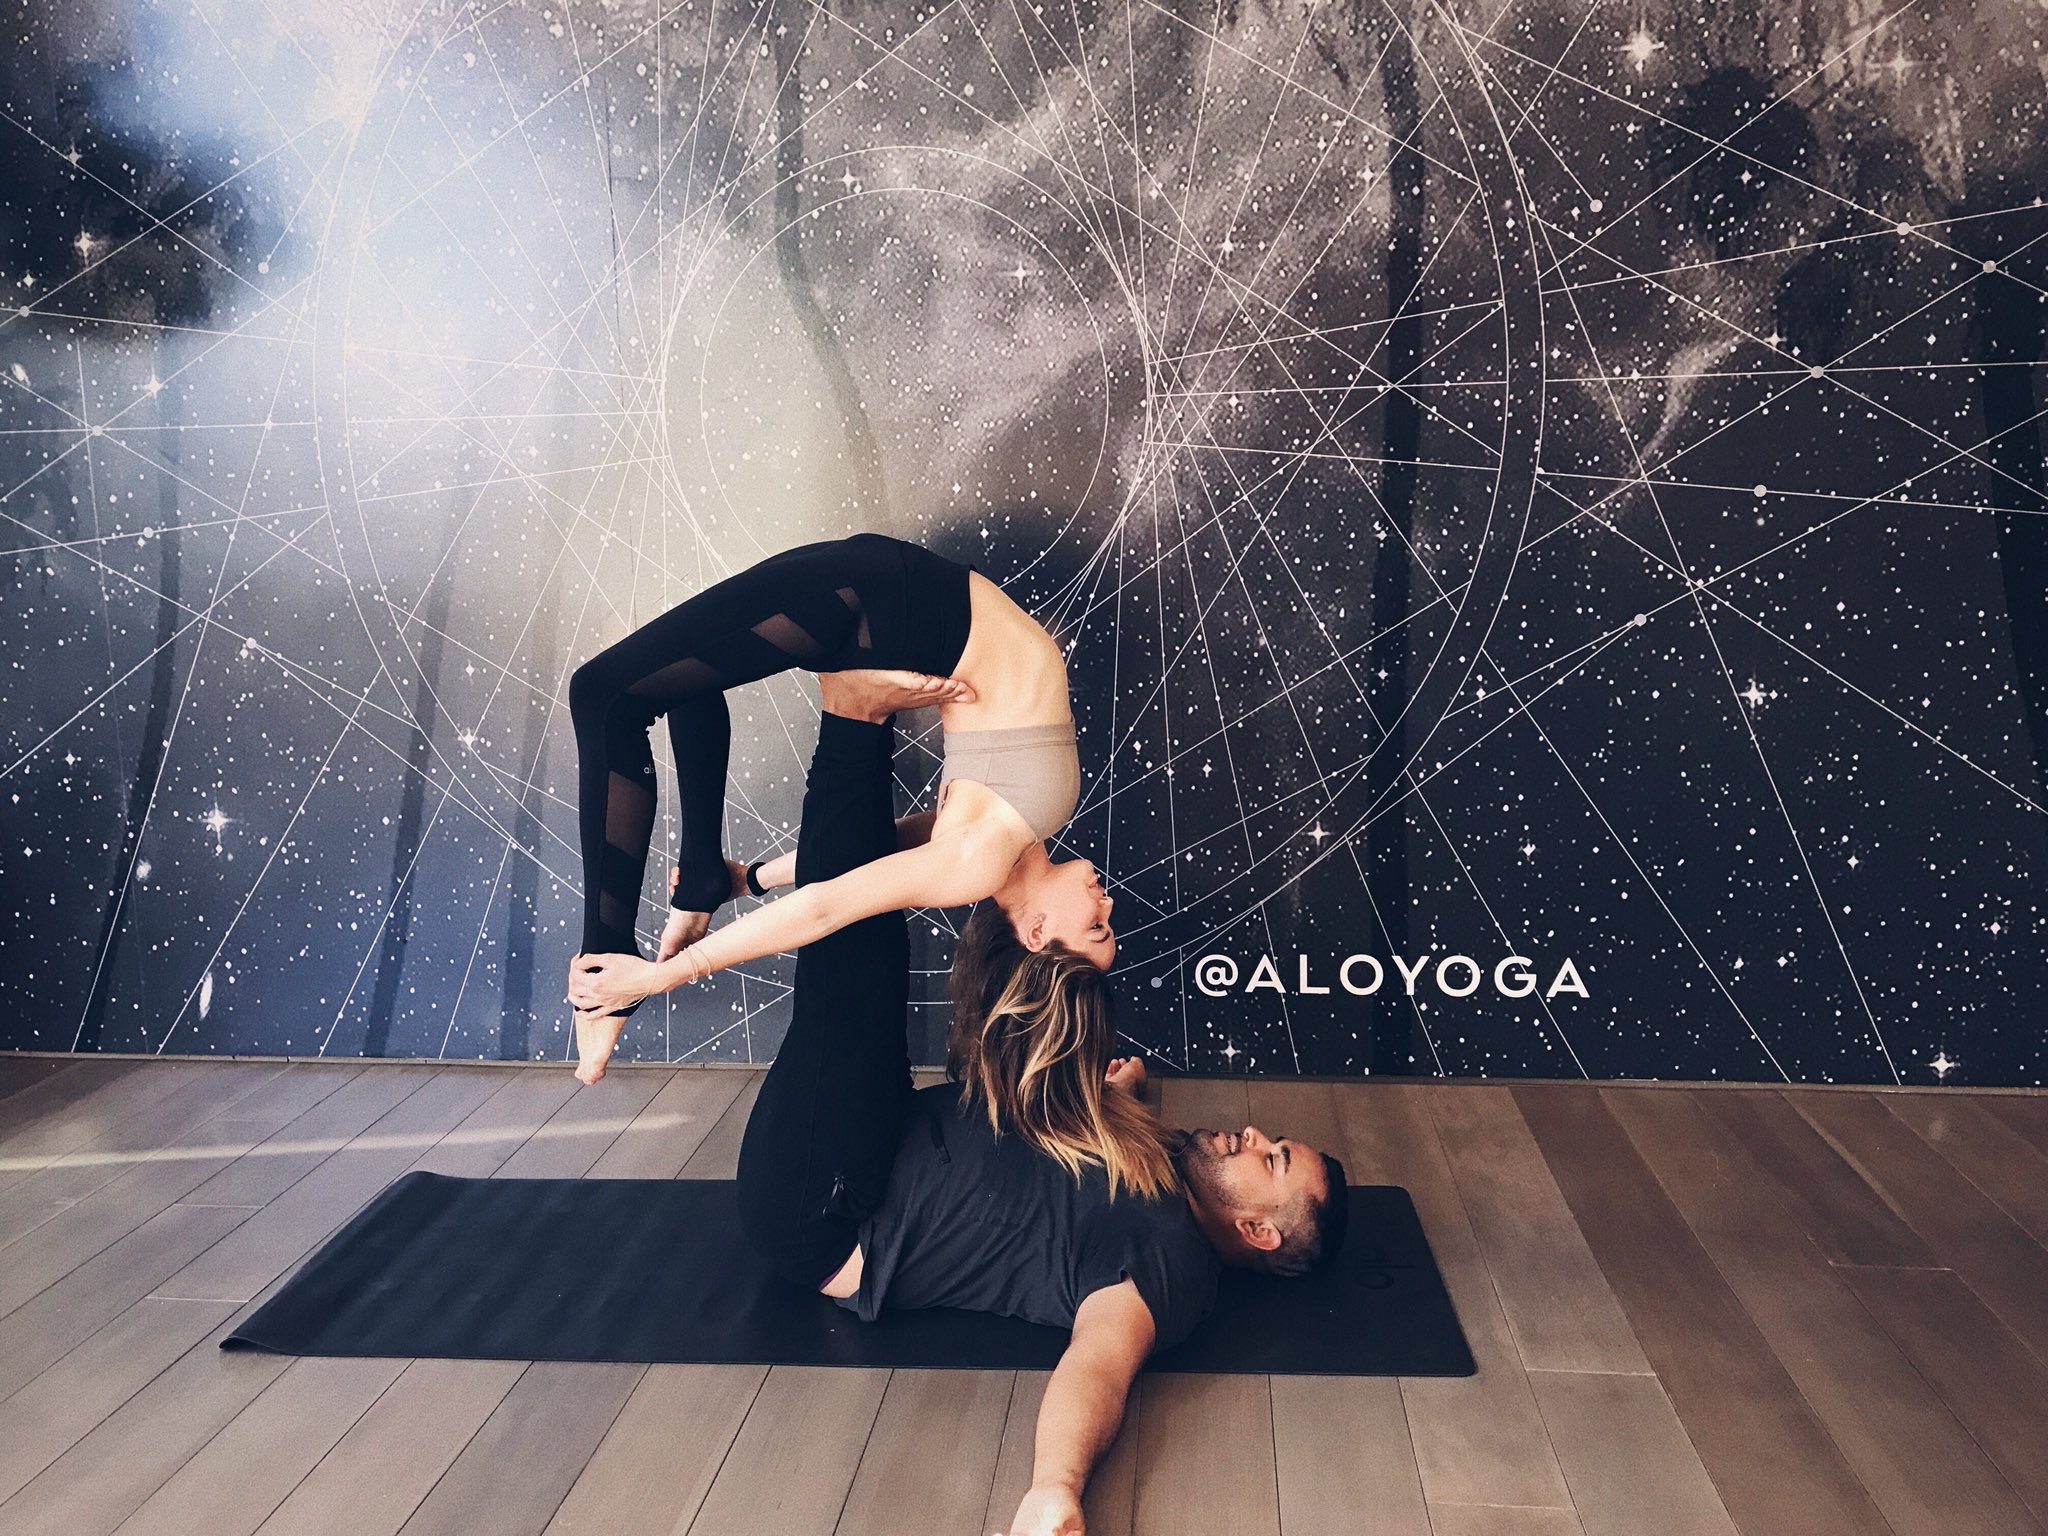 debby-ryan-doing-yoga-32918-twitter-and-instagram-1.jpg